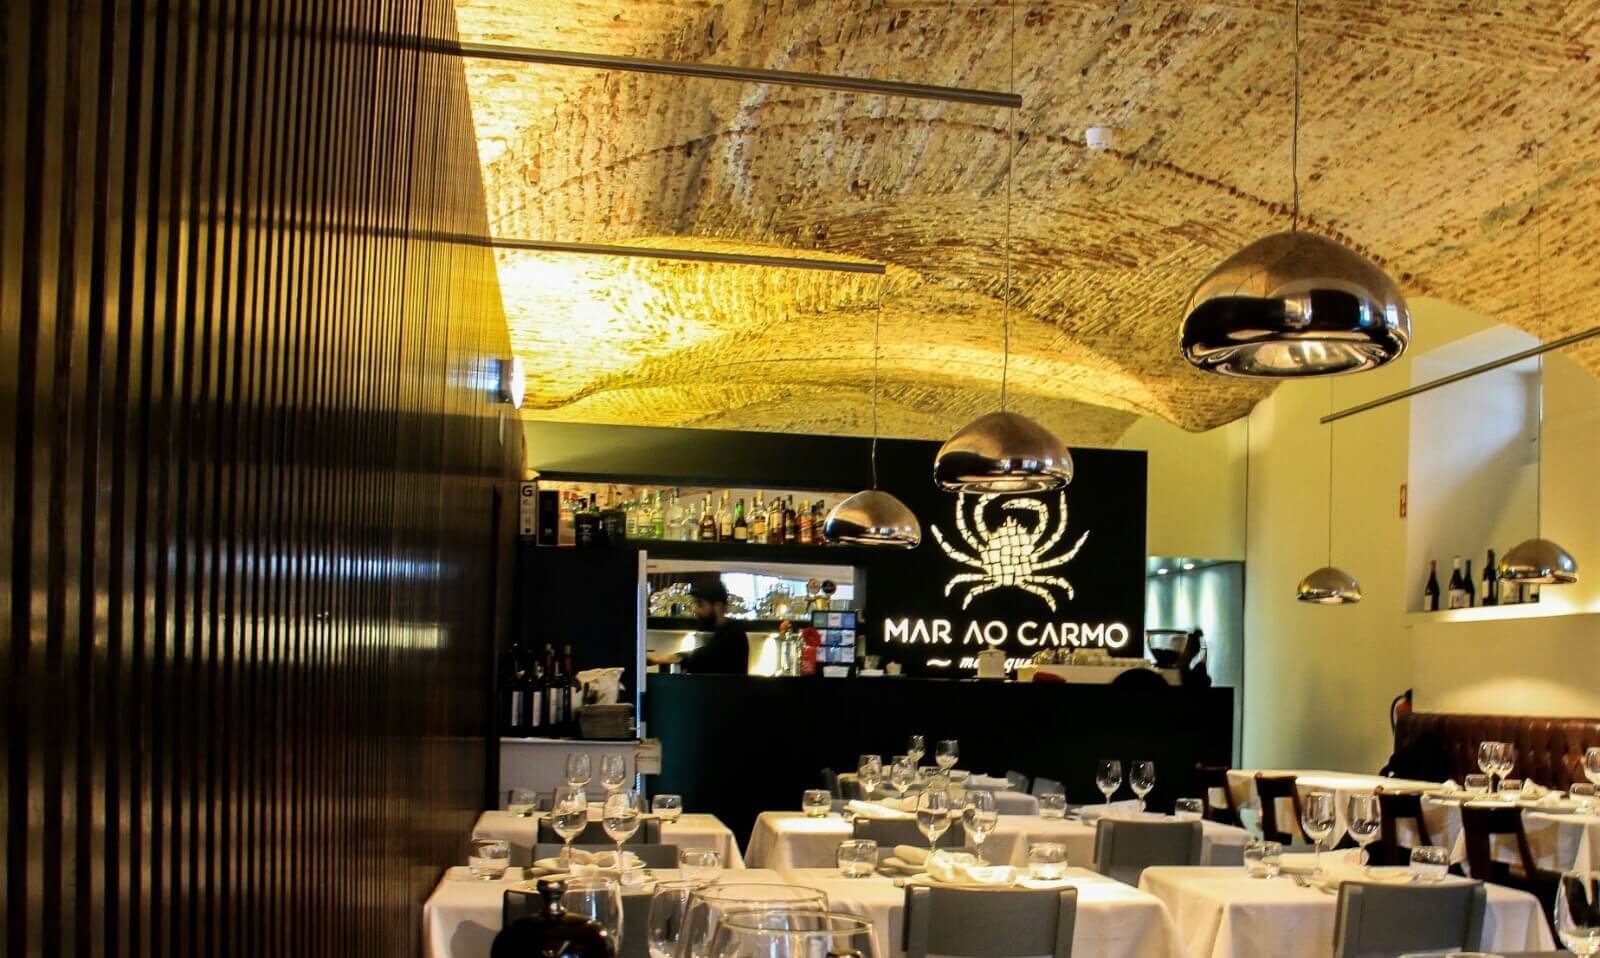 Restaurant Mar Ao Carmo in Lisbon